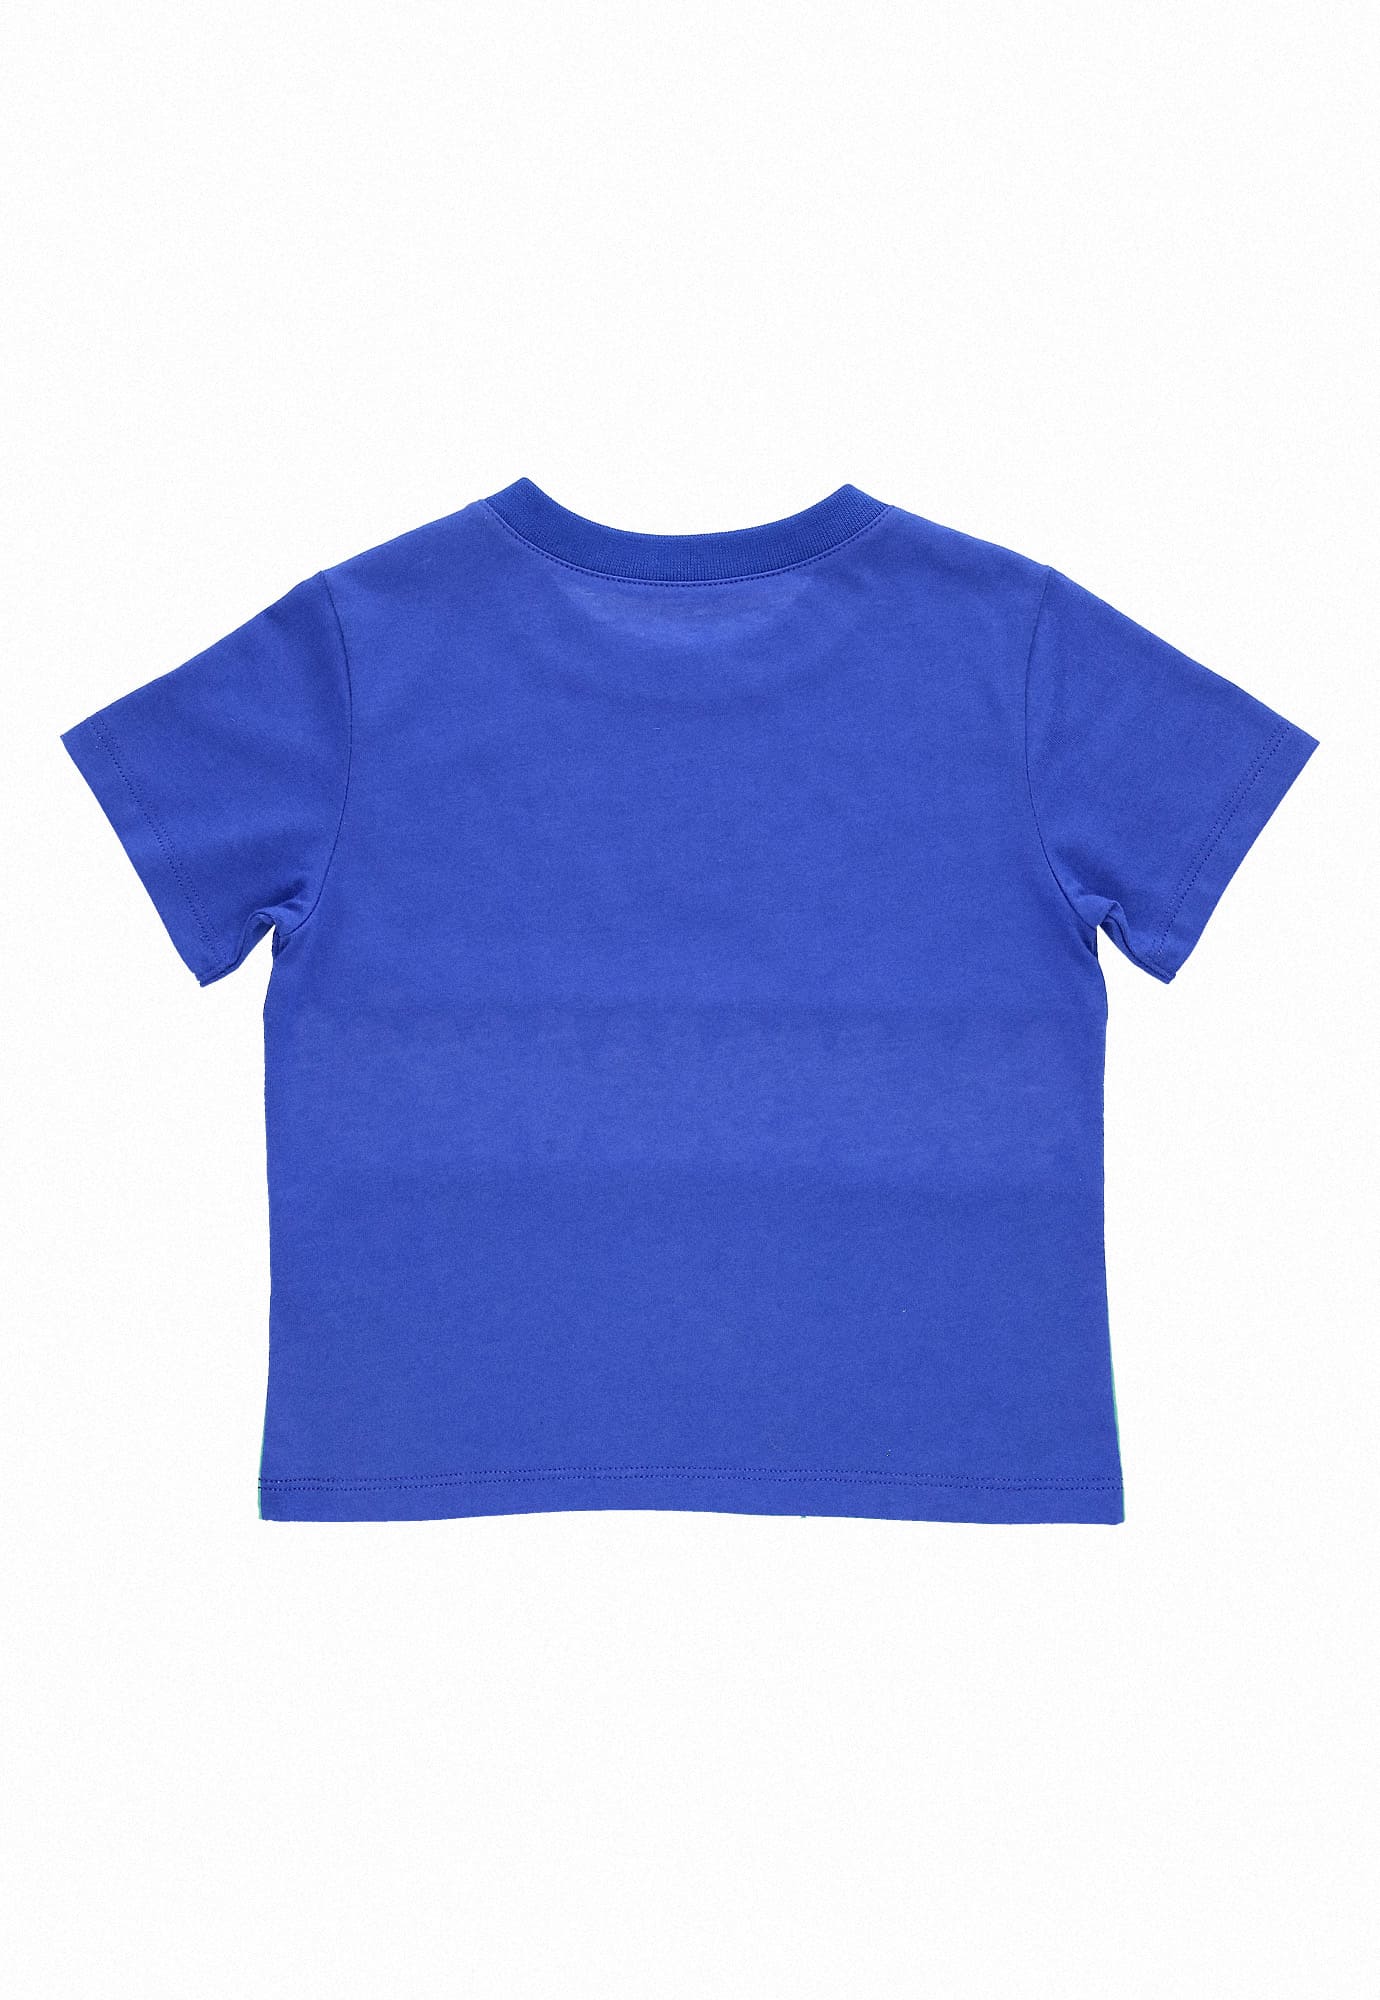 Camiseta azul rey manga corta, en bloques de colores, estampado frontal y cuello redondo para bebé niño